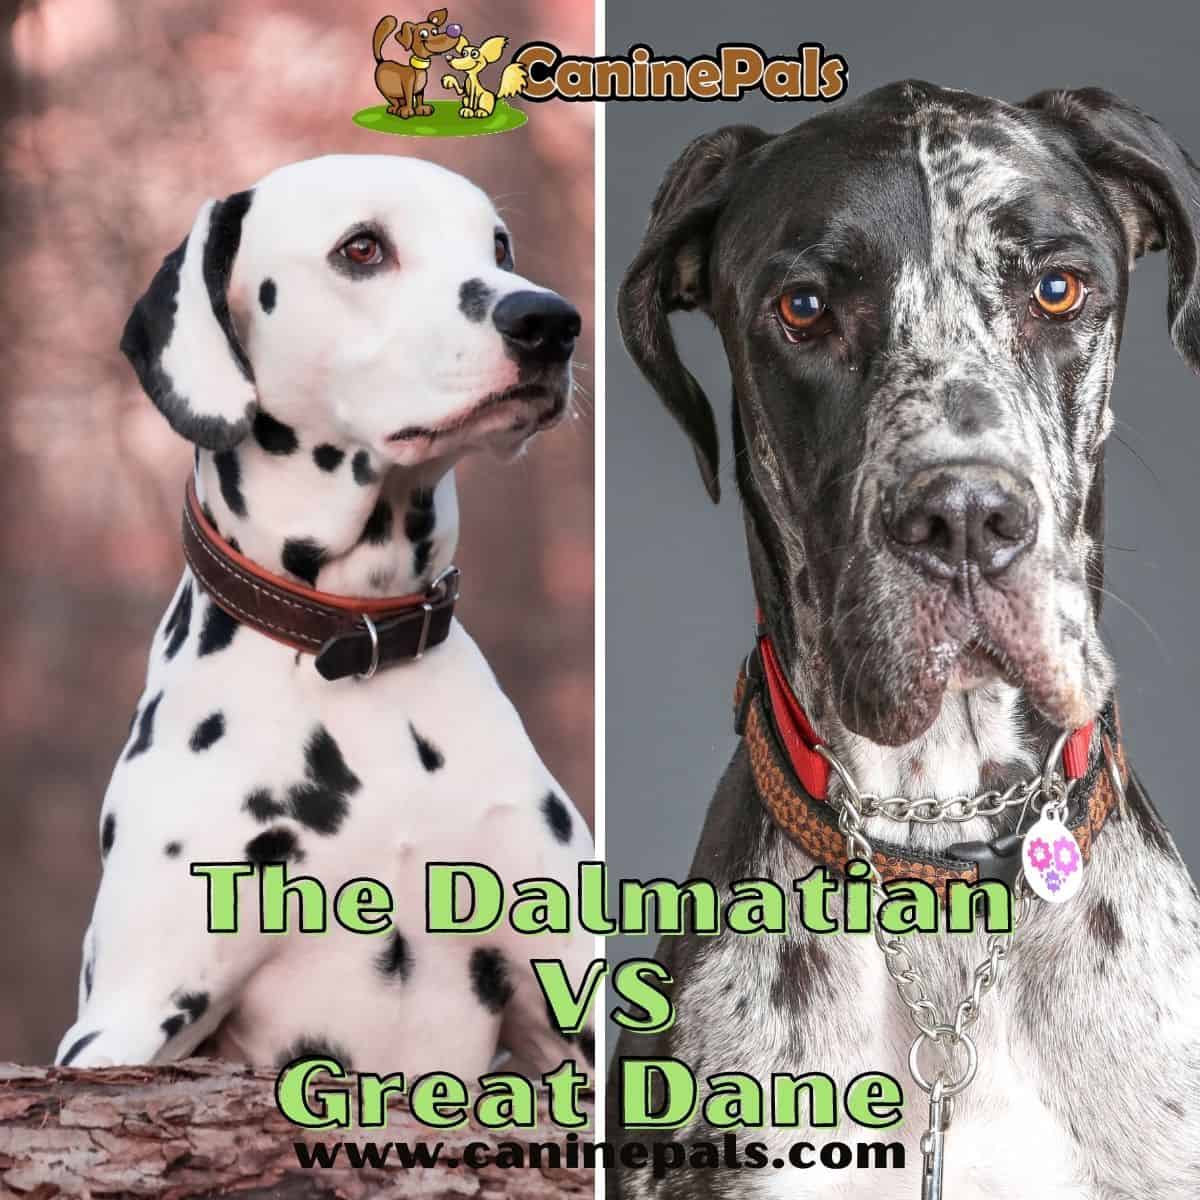 Dalmatian vs Great Dane